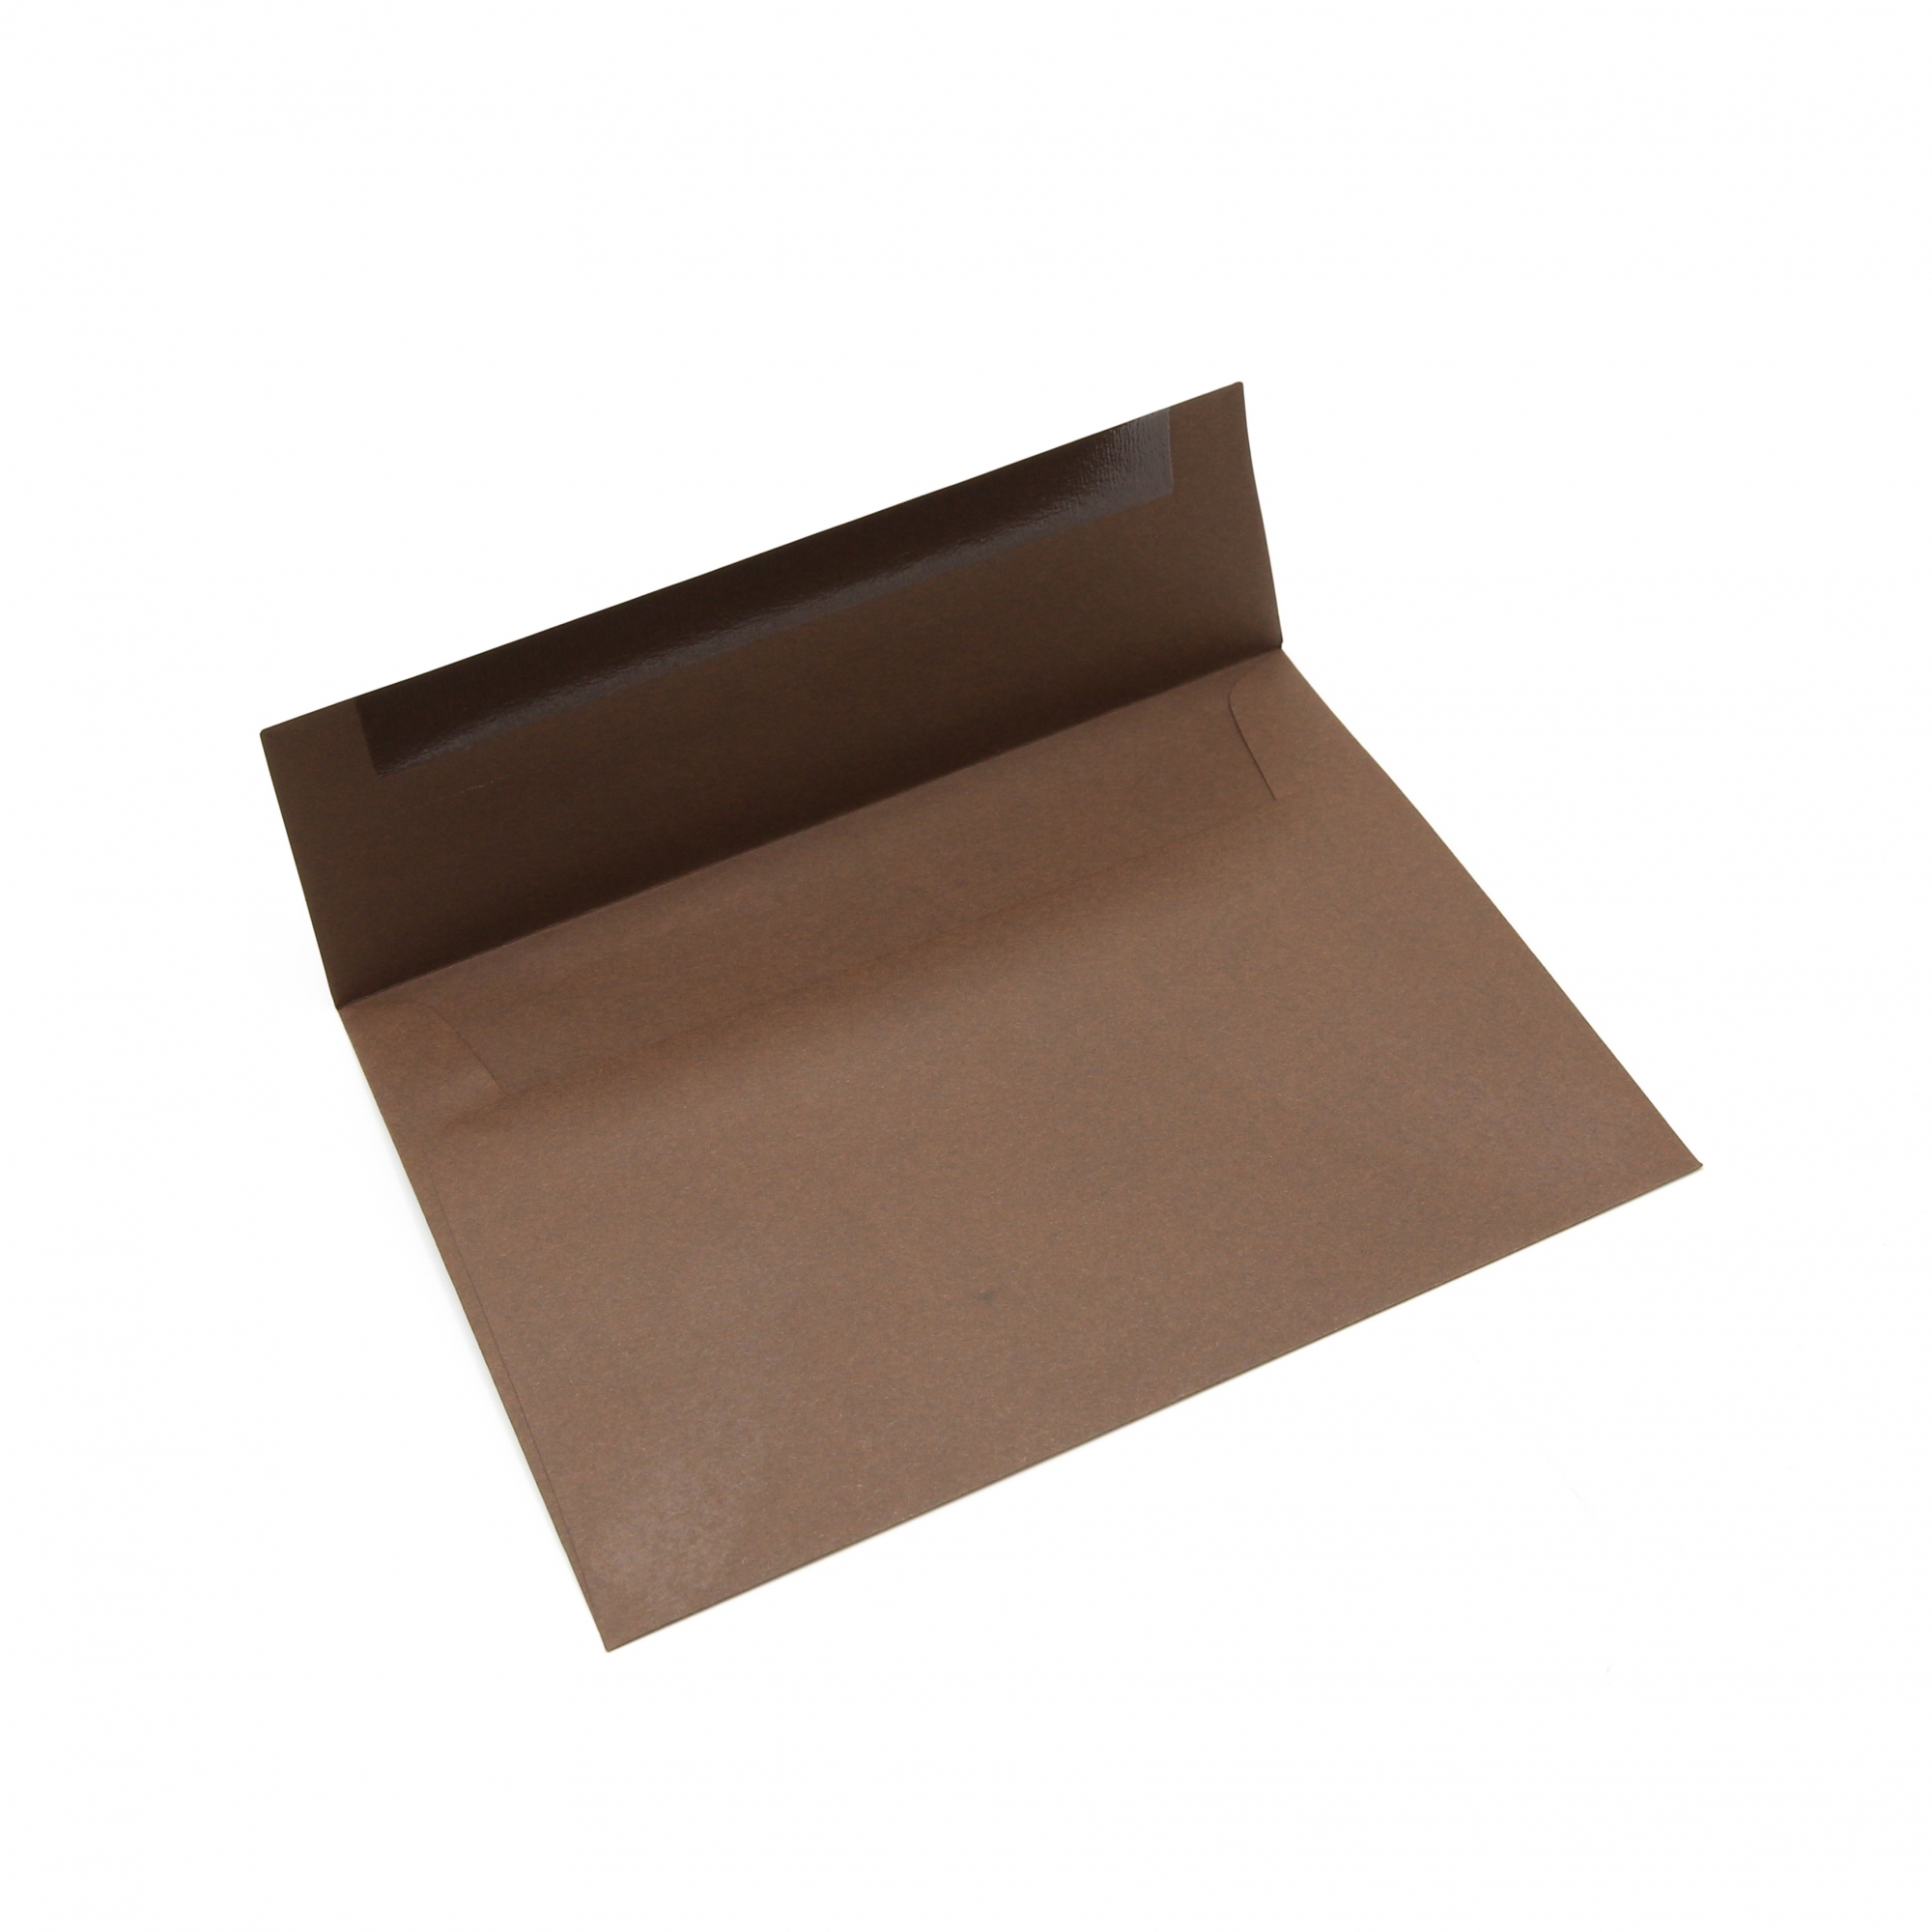 a2 envelope size 4. x 5.75